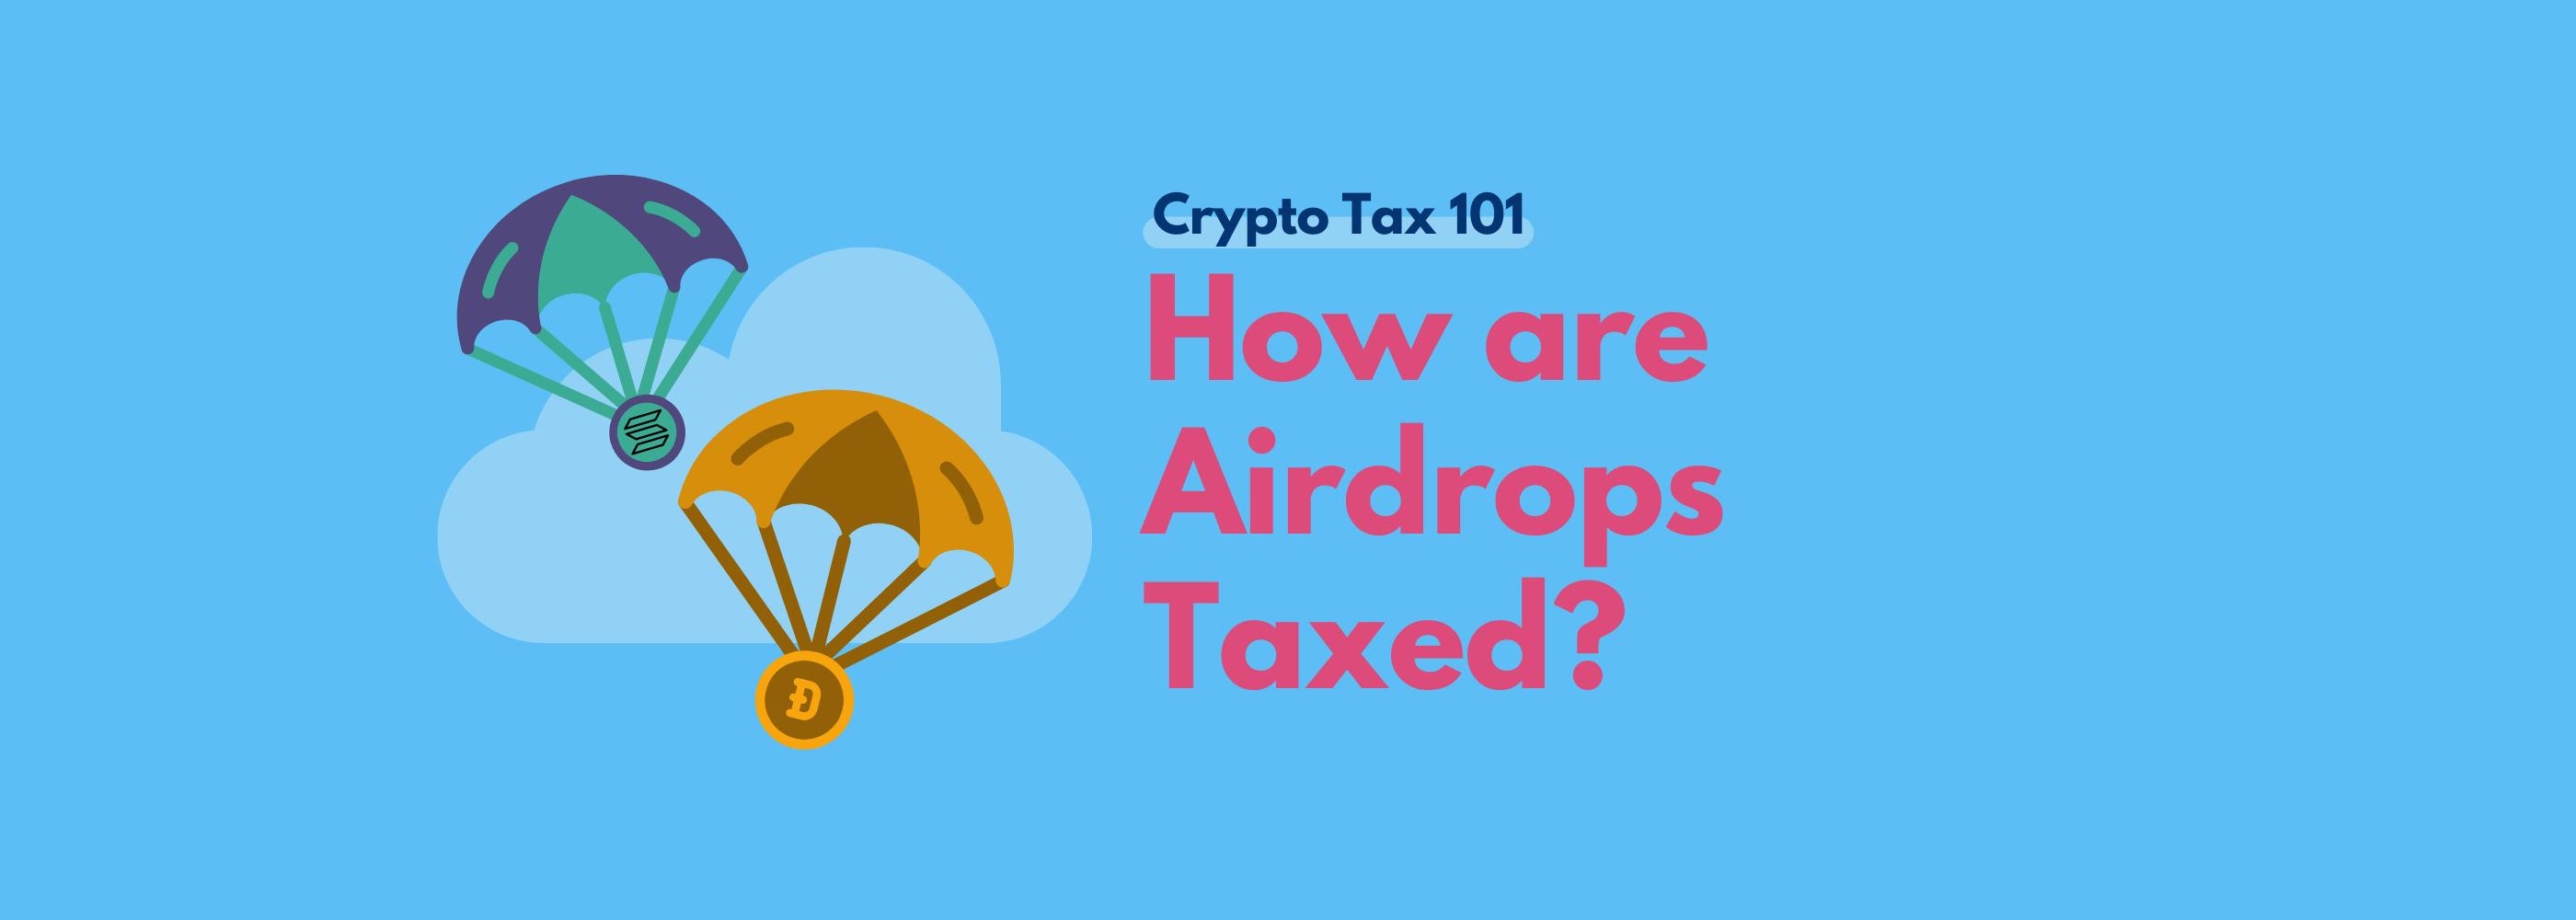 airdrops crypto taxes